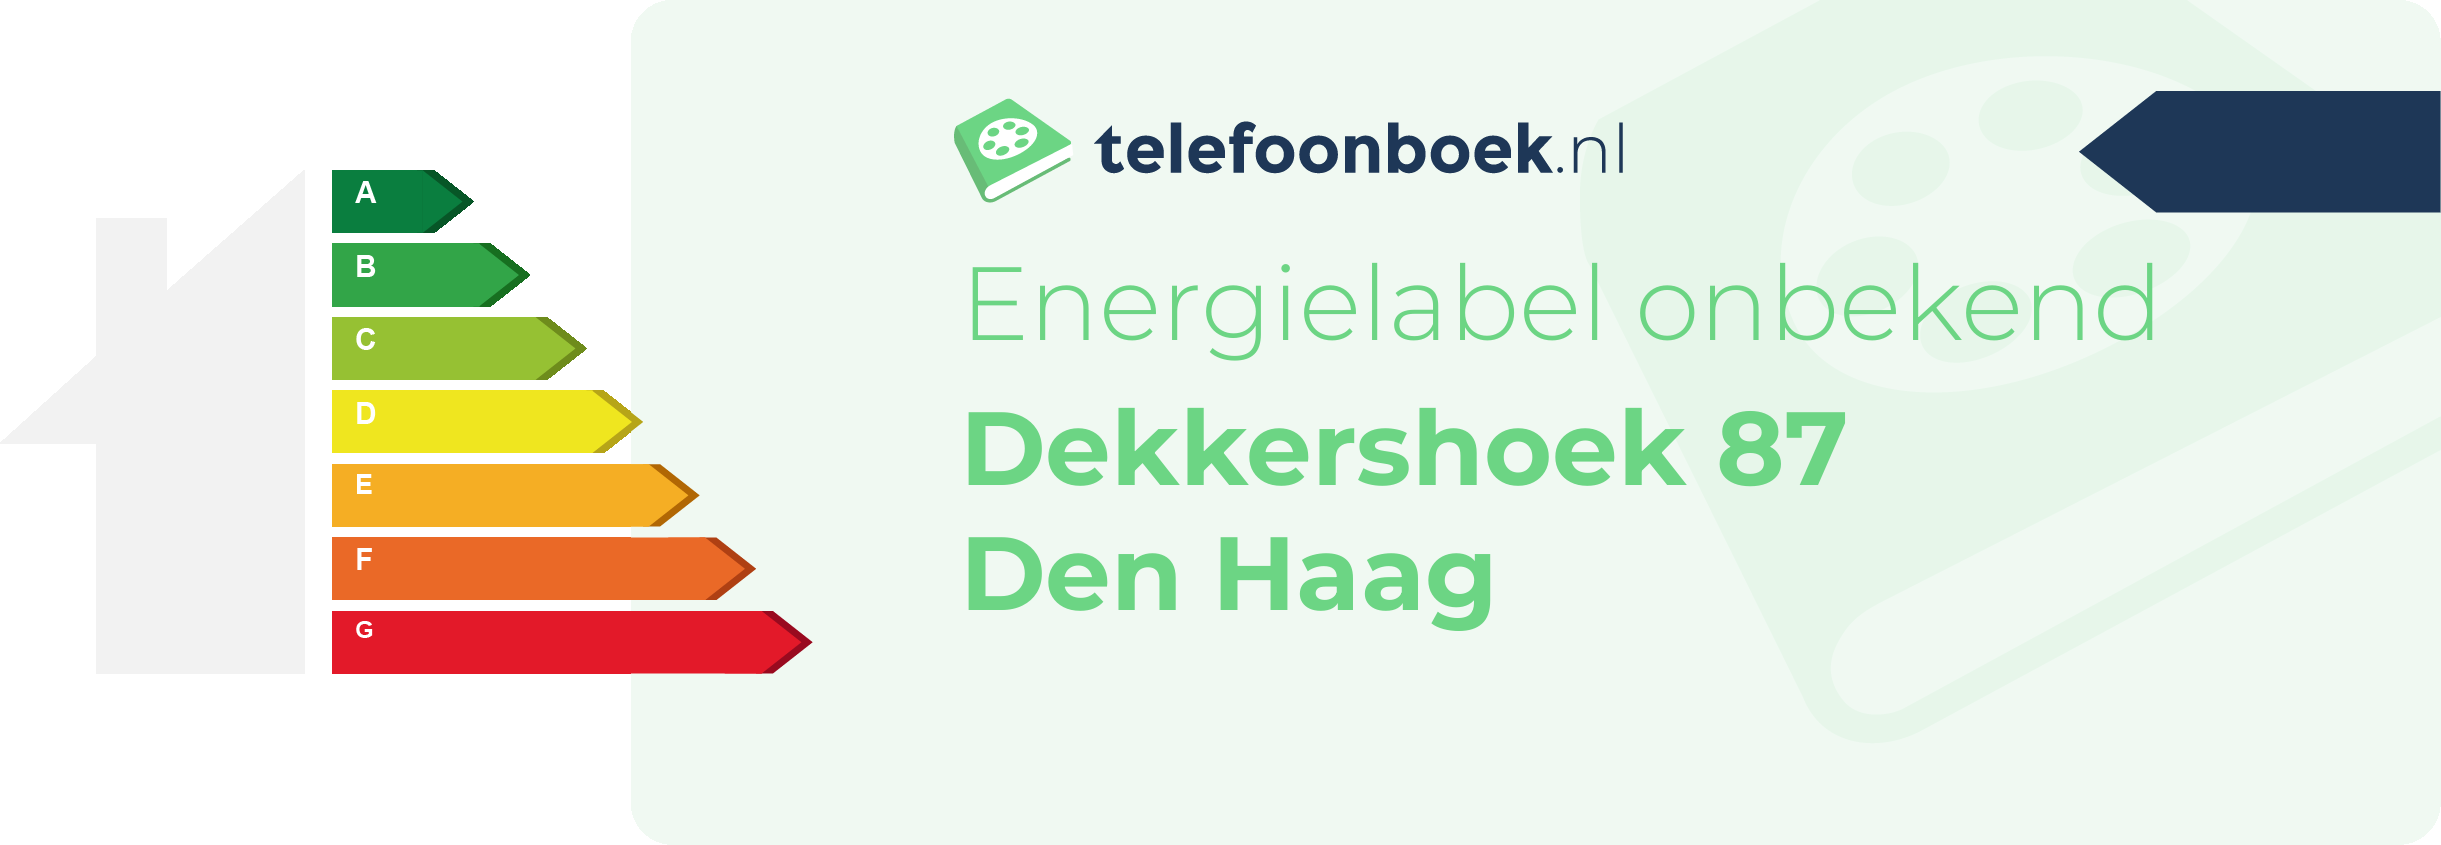 Energielabel Dekkershoek 87 Den Haag